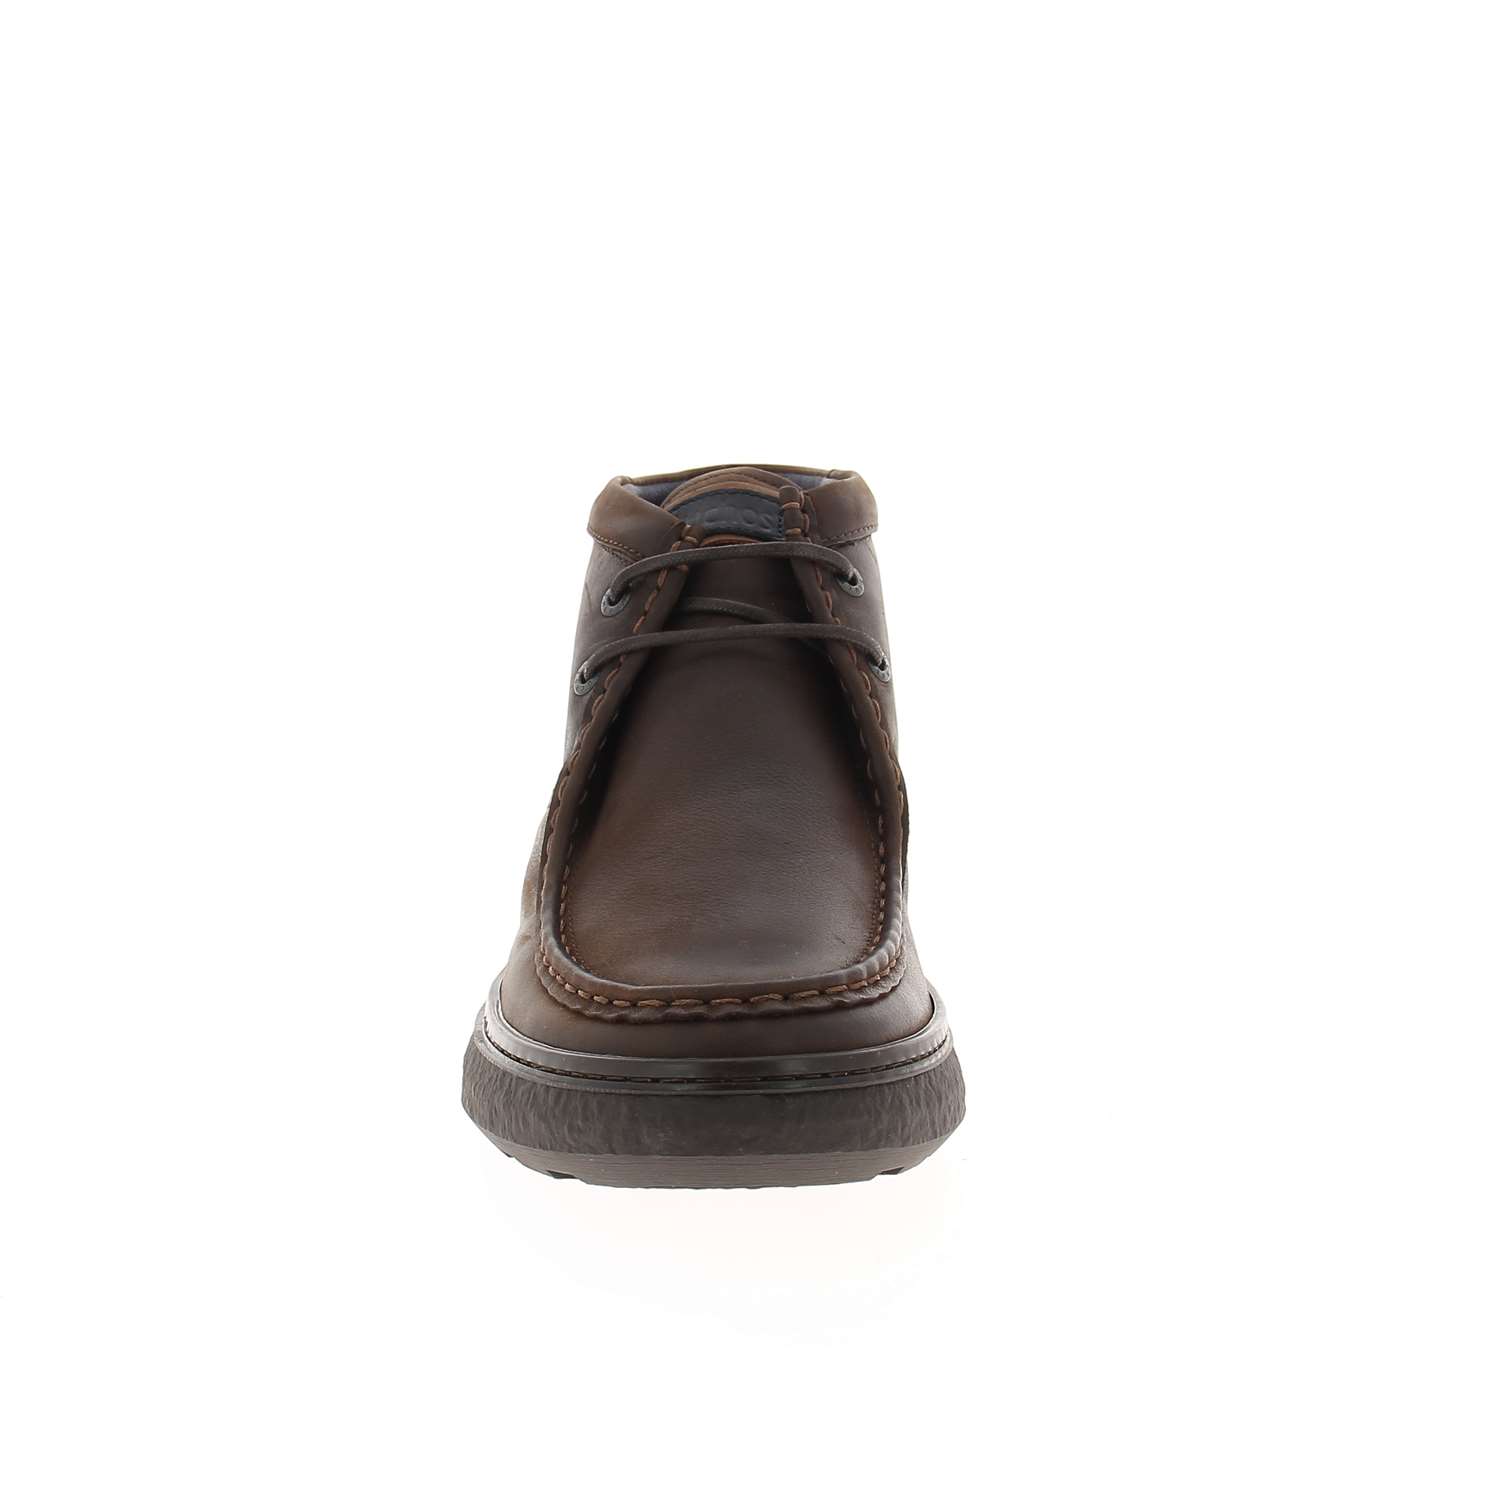 03 - RAGNAR - FLUCHOS - Chaussures à lacets - Nubuck